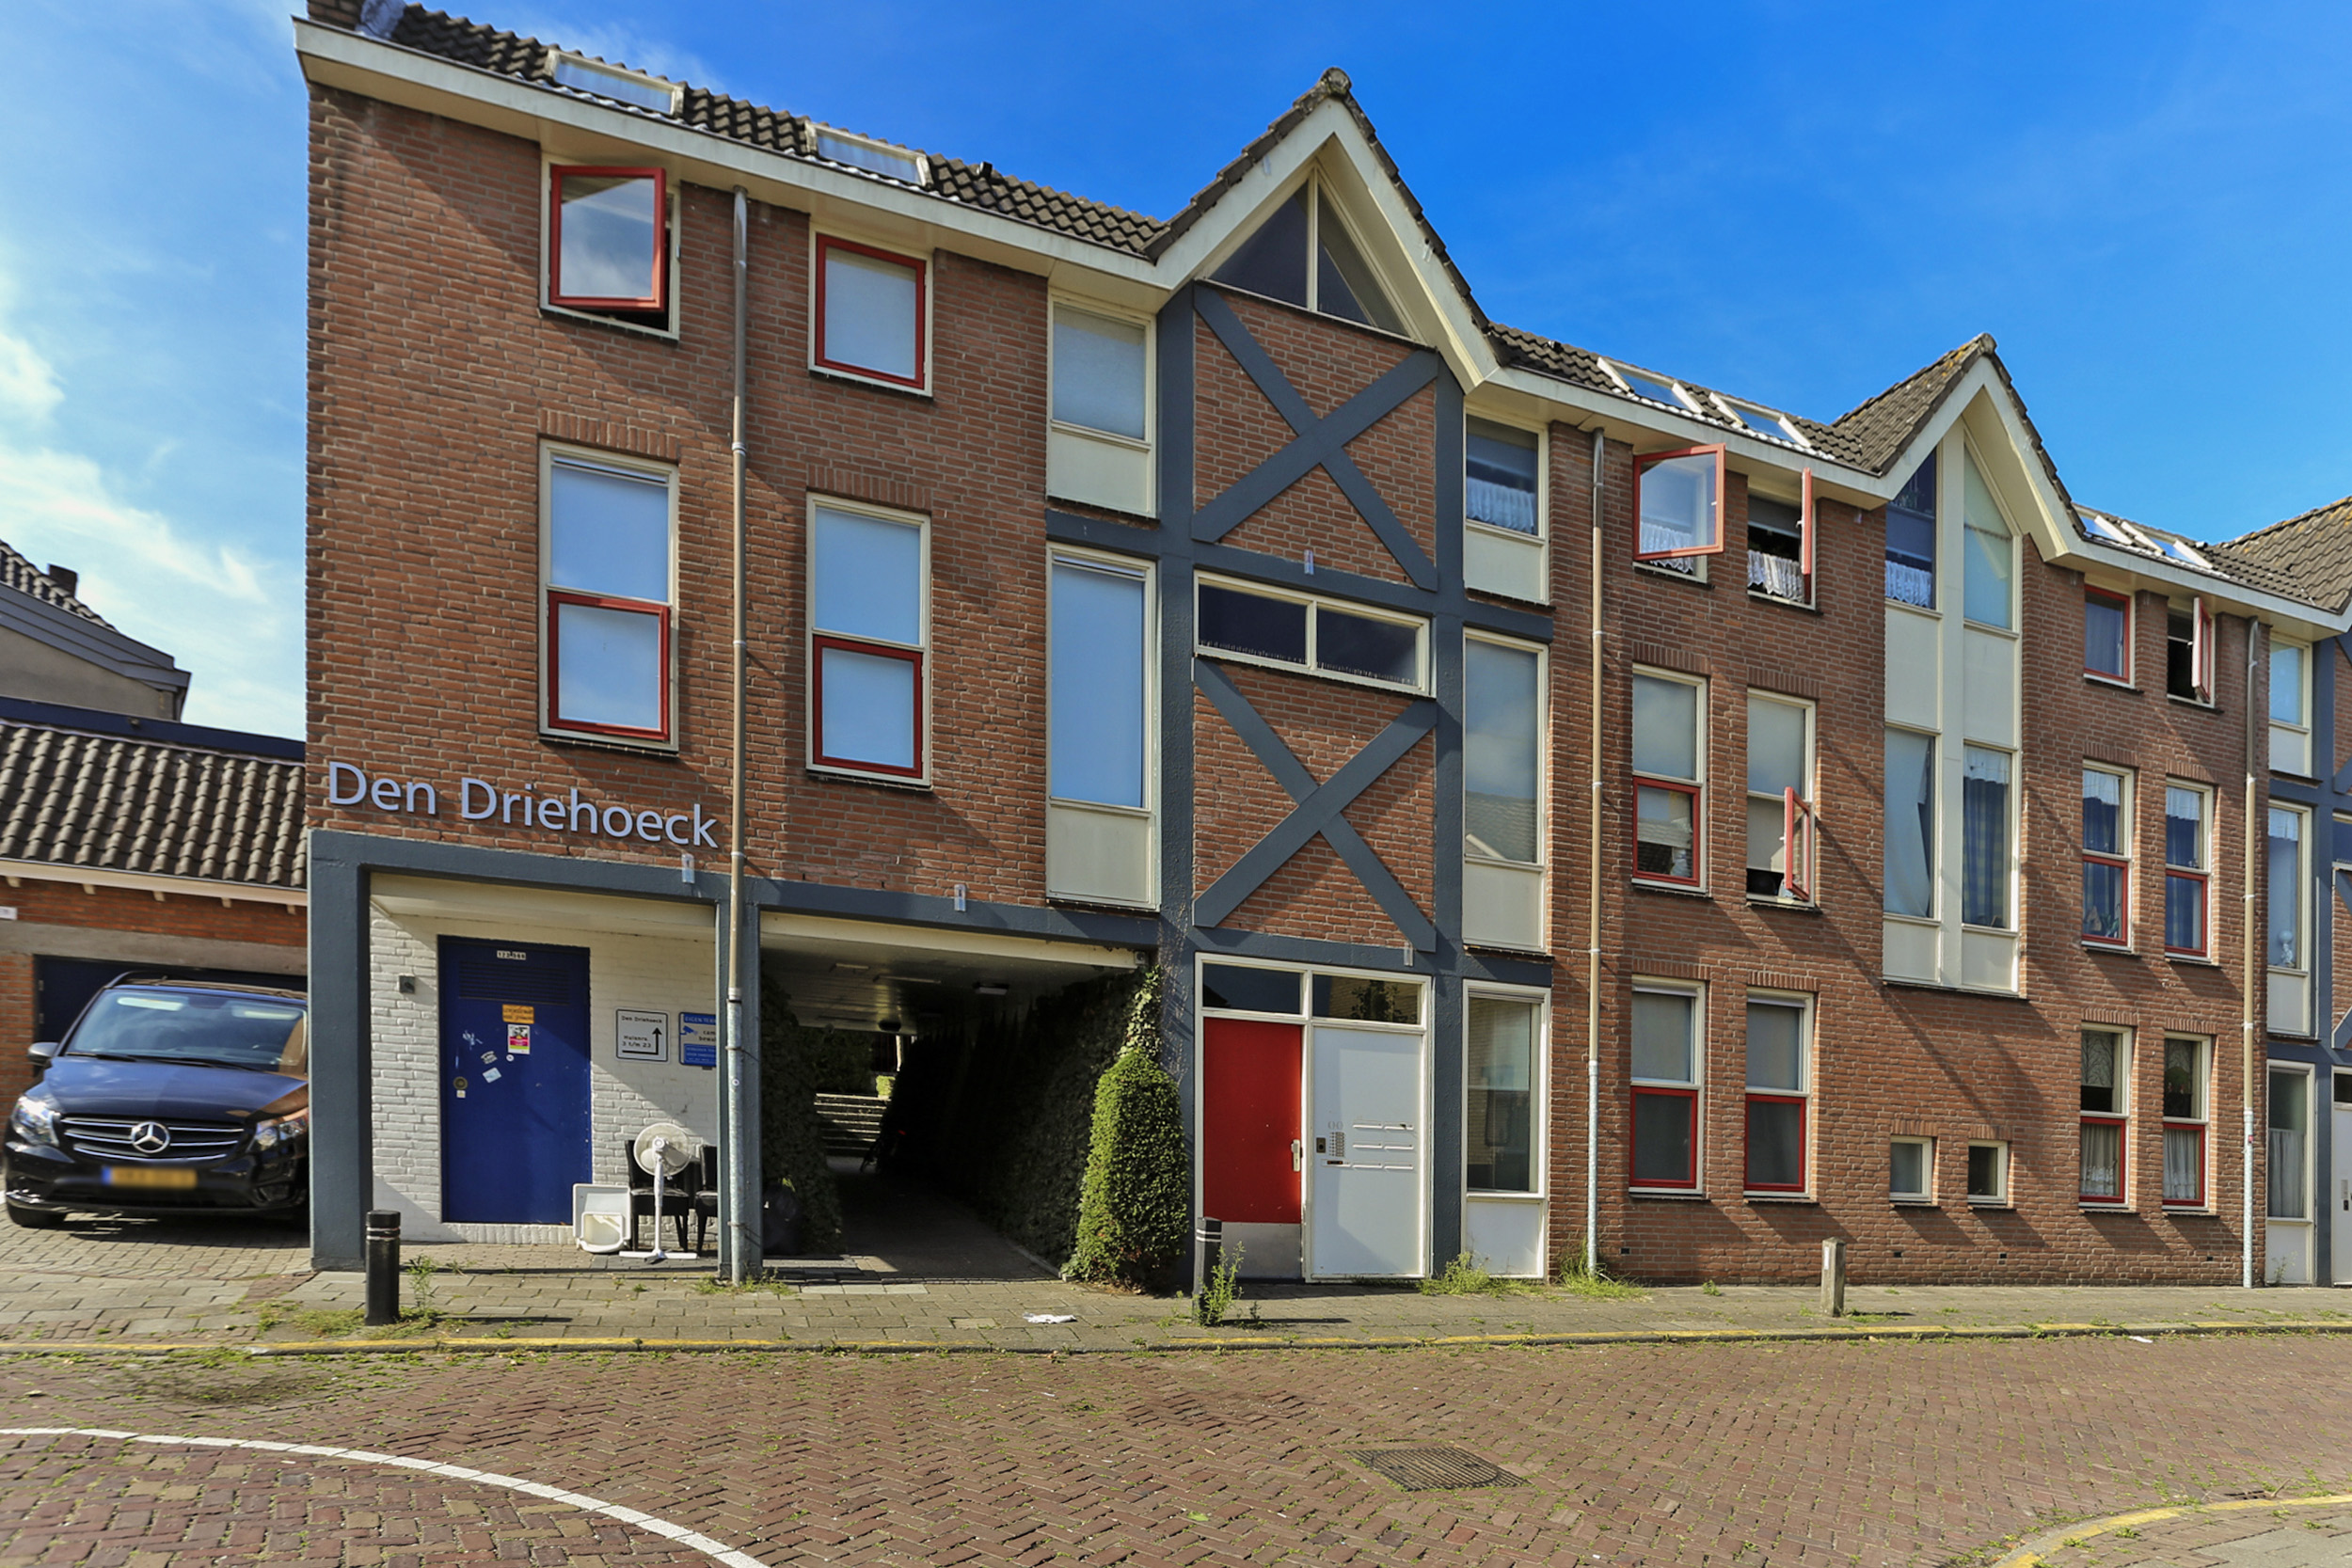 Den Driehoek 2, 4731 GZ Oudenbosch, Nederland